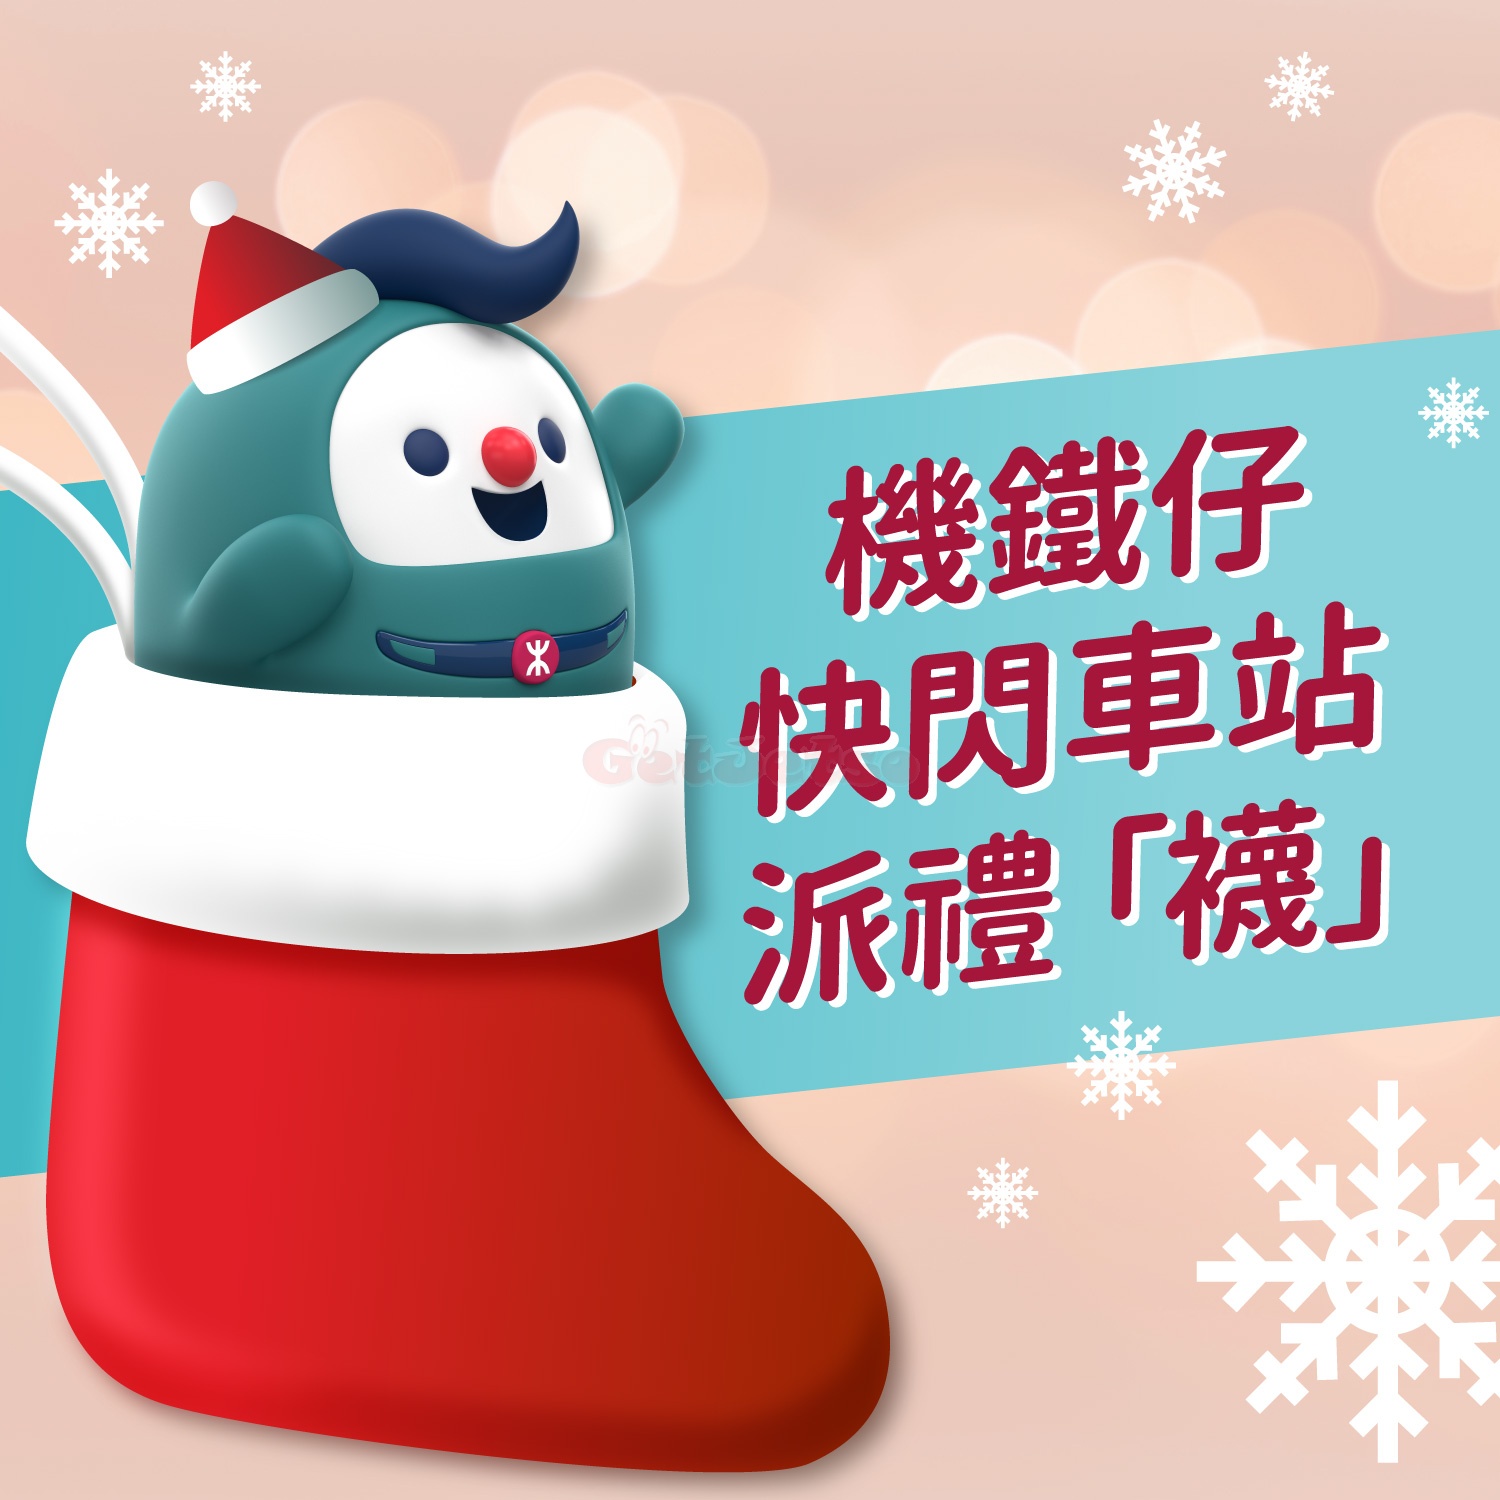 MTR 港鐵：機場快綫車站免費派發聖誕小禮「襪」(12月14日更新)1.jpg